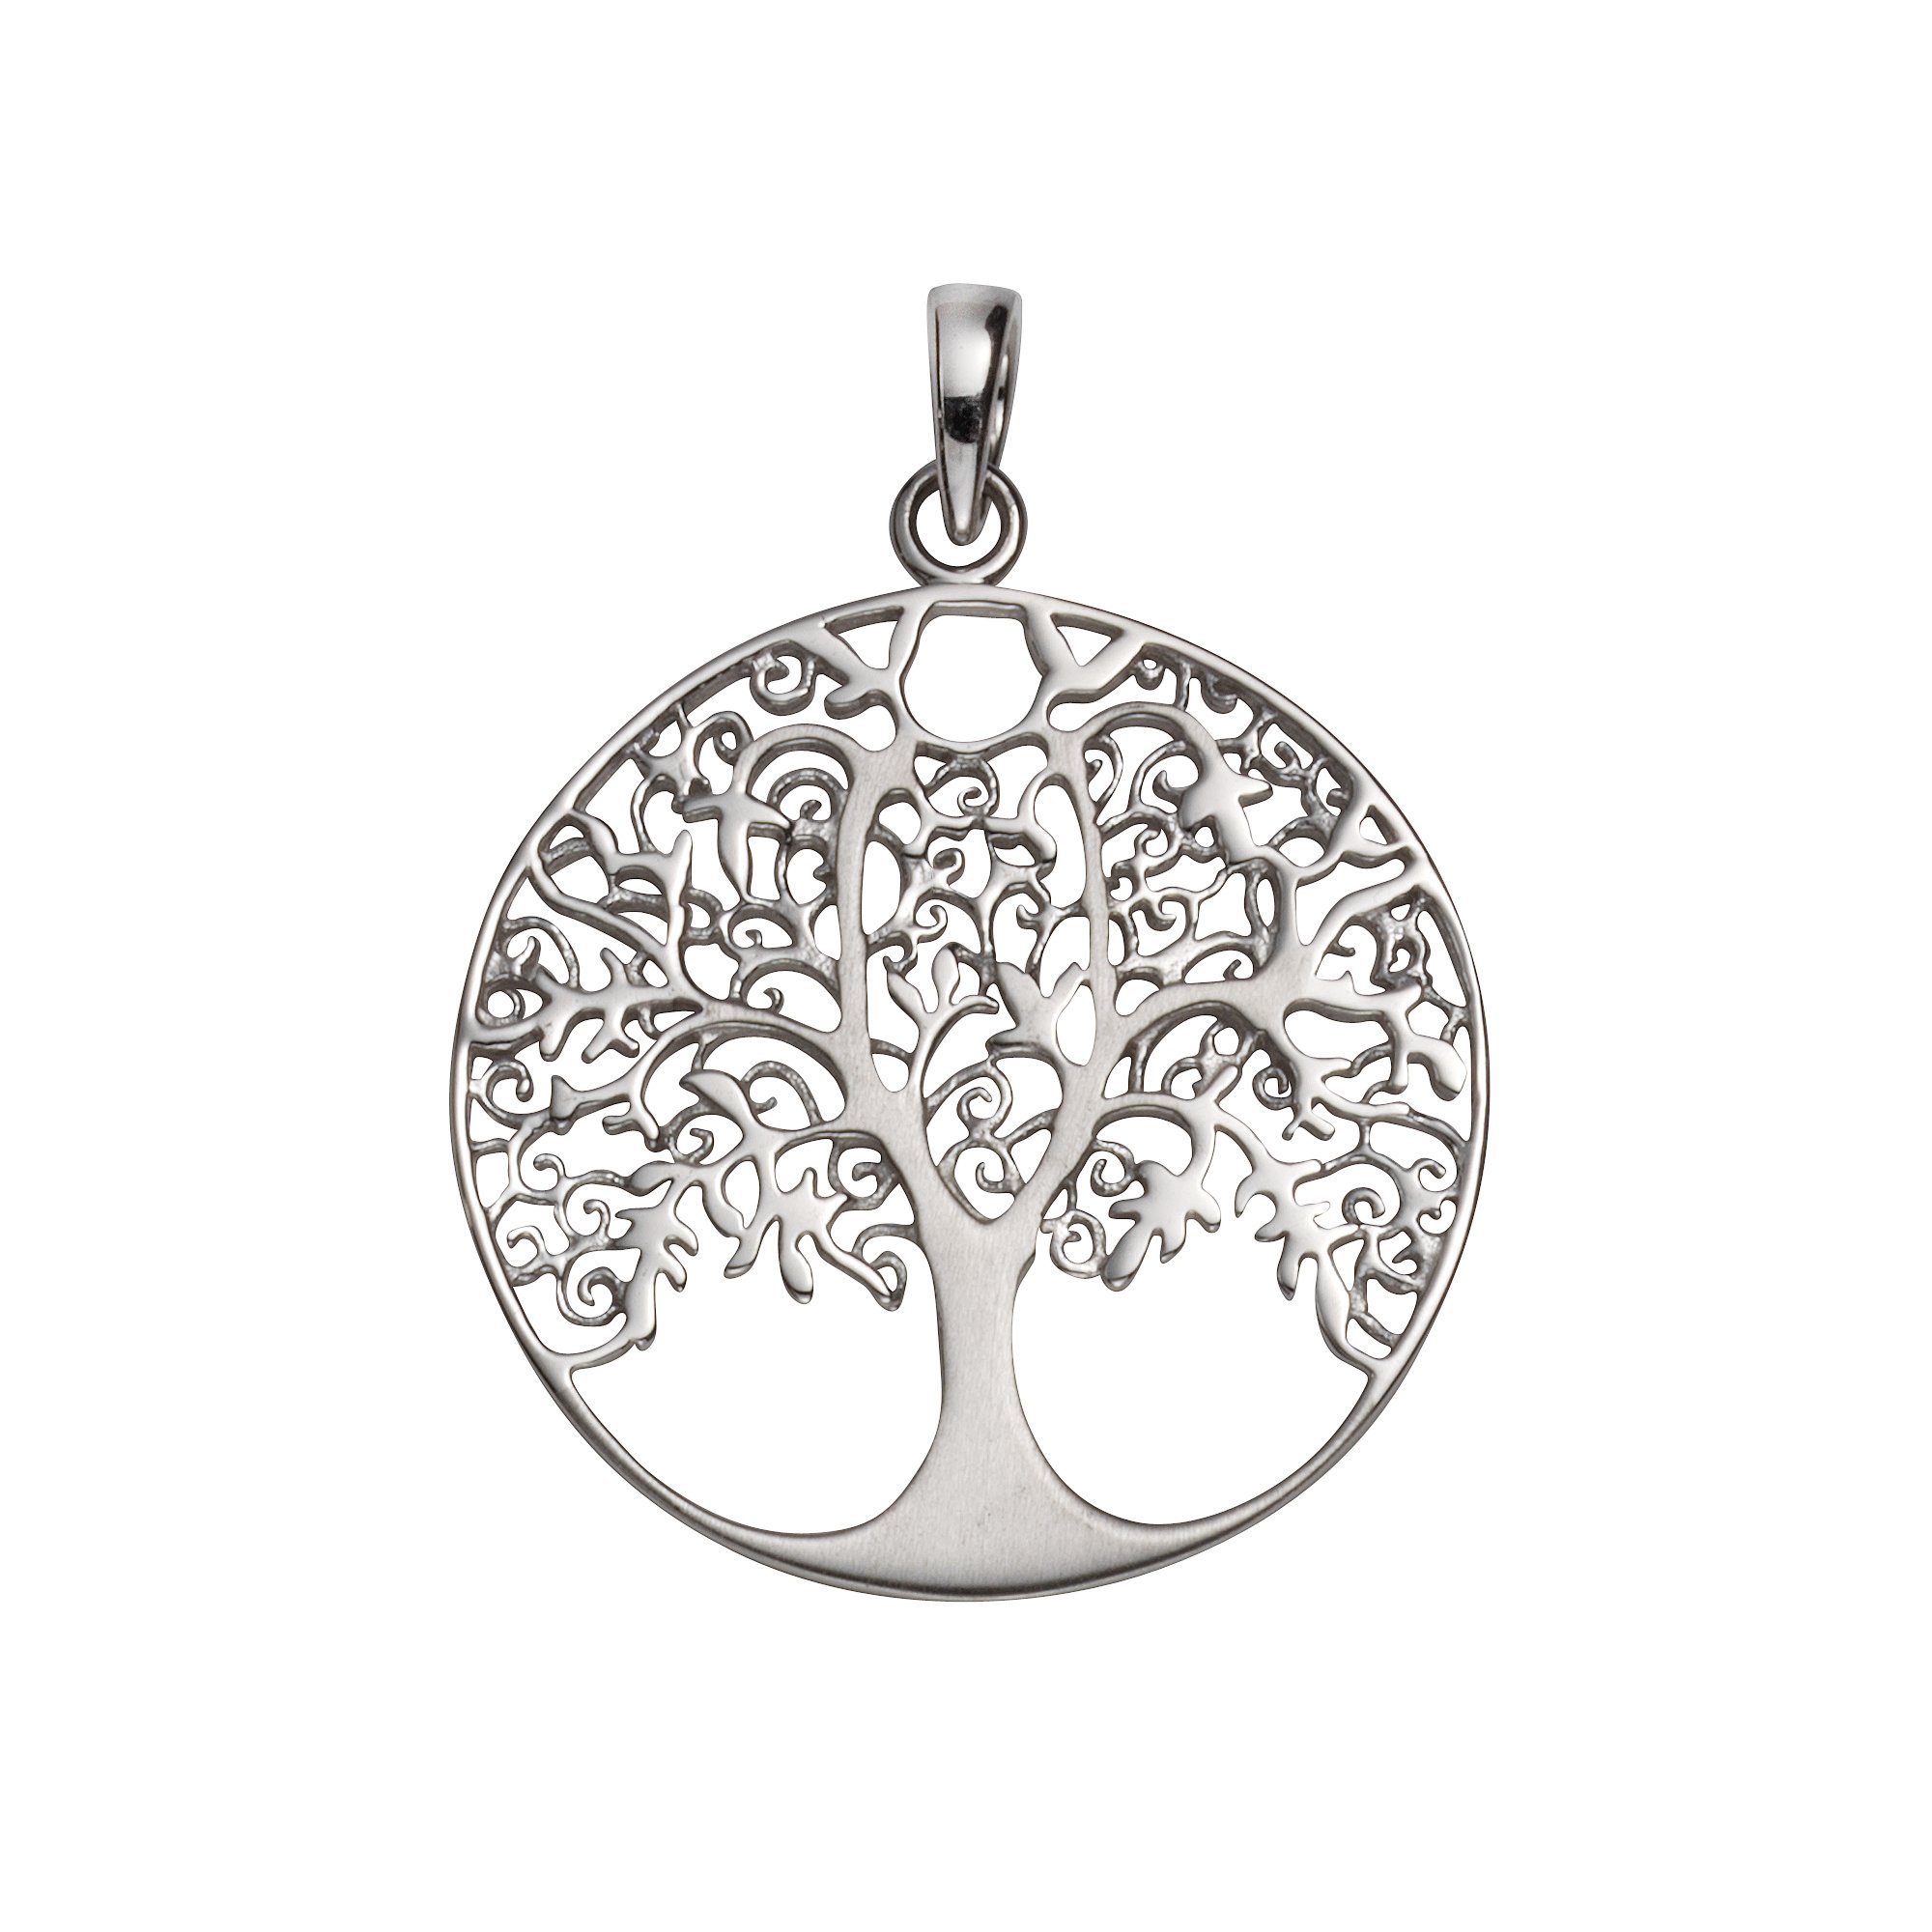 Vivance Kettenanhänger 925 Sterling Silber rhodiniert Lebensbaum, Das  ideale Geschenk für besondere Anlässe | Kettenanhänger